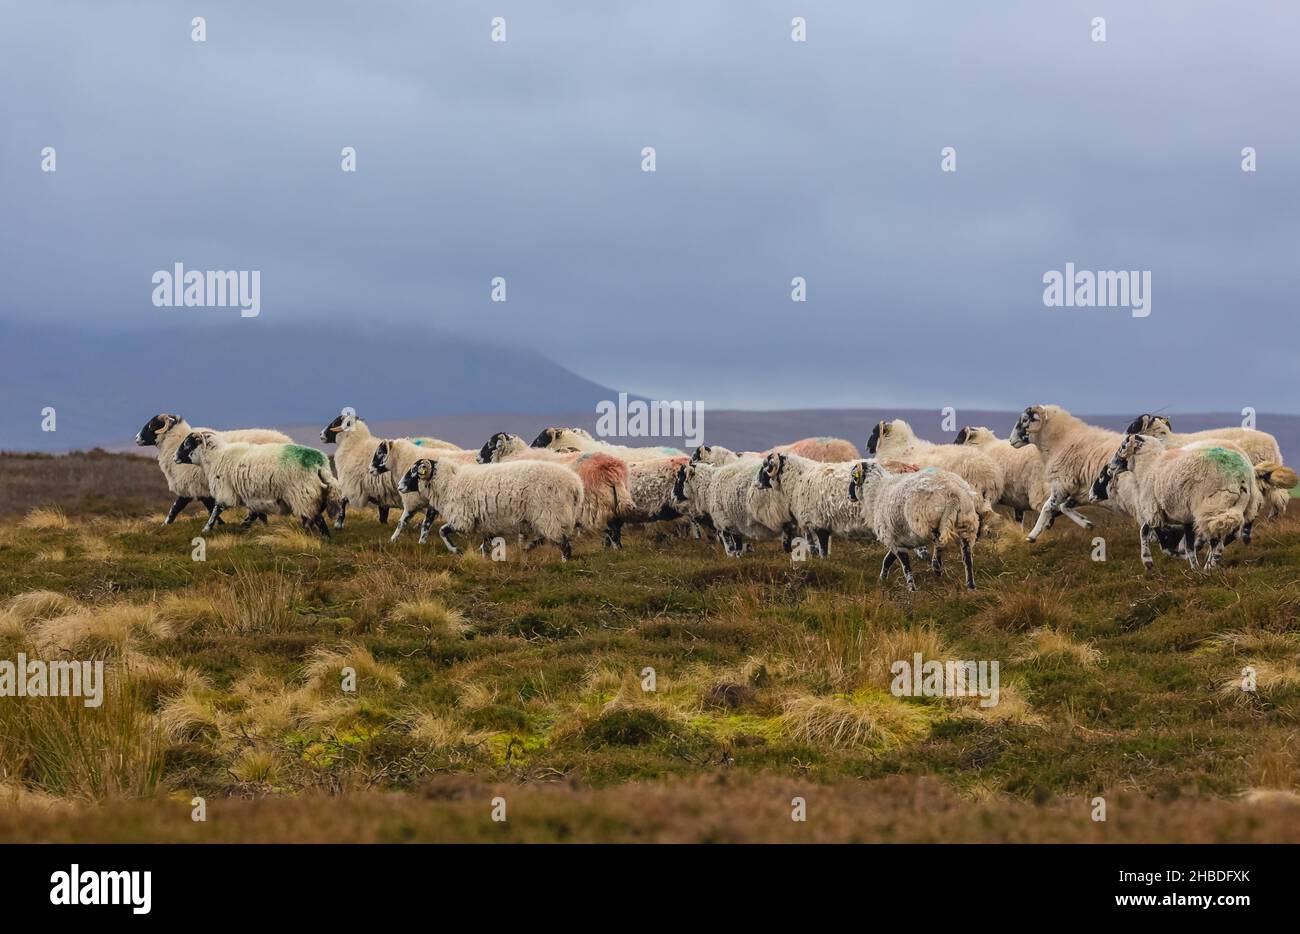 Un troupeau de moutons de Swaledale se dirigeant vers la maison à travers la lande brumeux dans les profondeurs de l'hiver.Yorkshire Dales, Royaume-Uni.Horizontale.Espace pour la copie. Banque D'Images